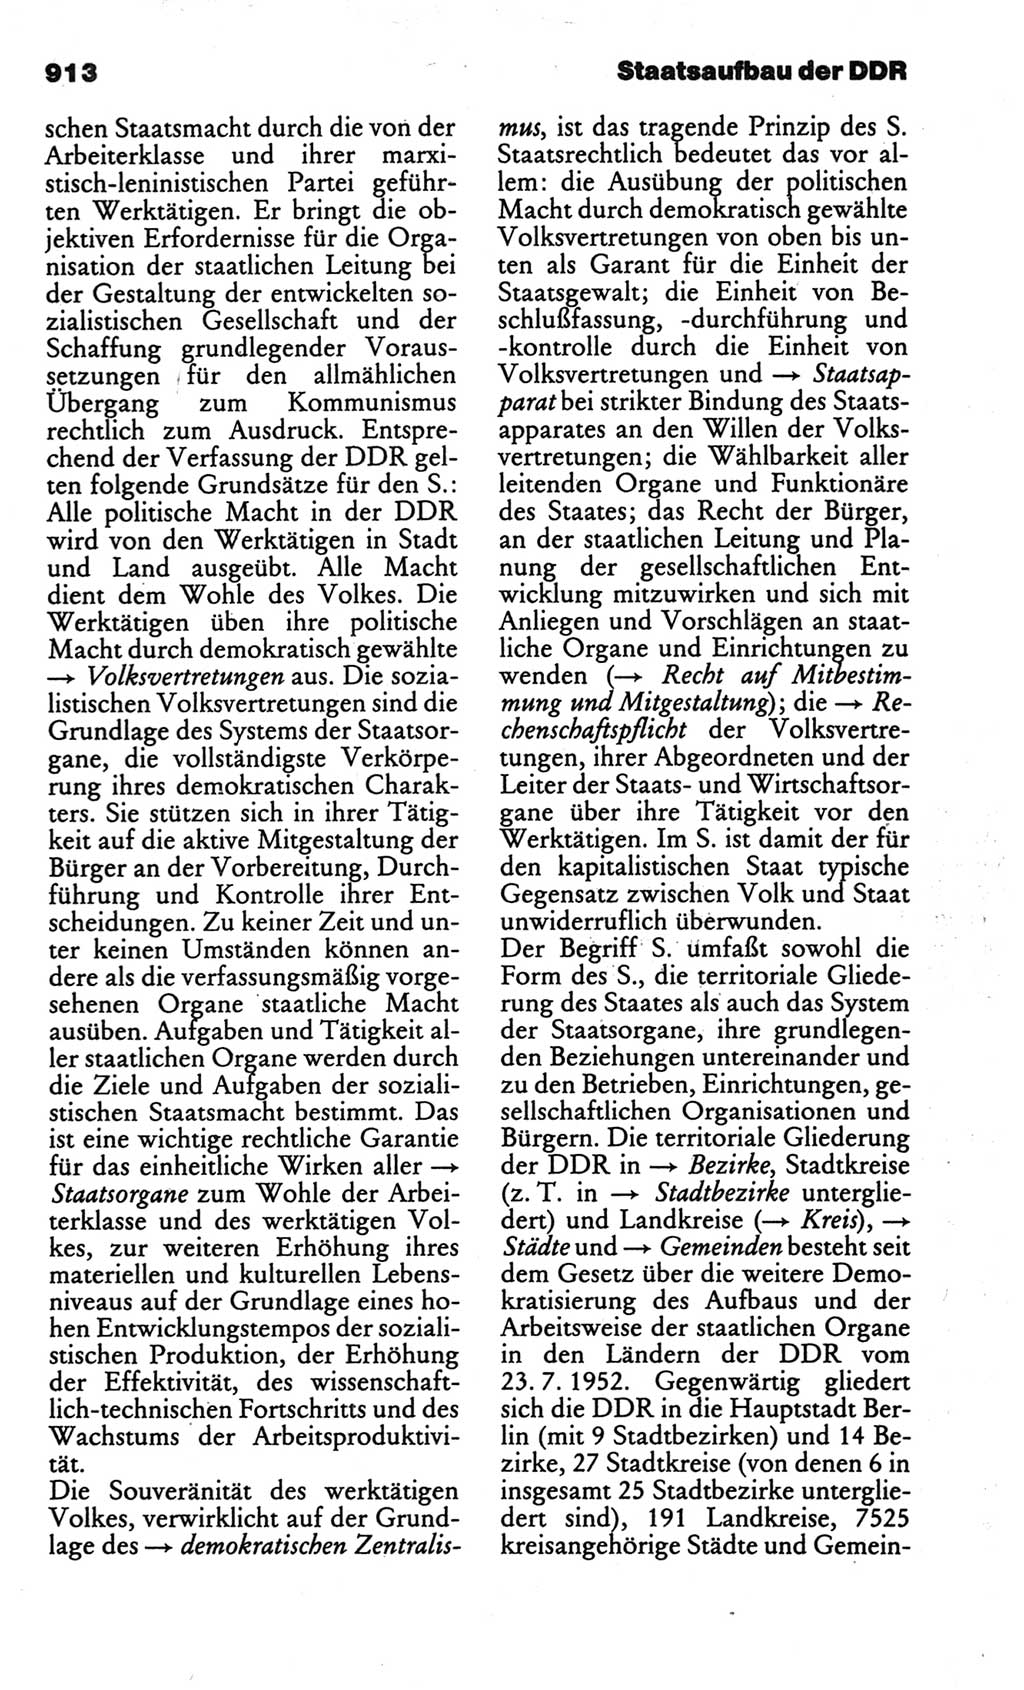 Kleines politisches Wörterbuch [Deutsche Demokratische Republik (DDR)] 1986, Seite 913 (Kl. pol. Wb. DDR 1986, S. 913)